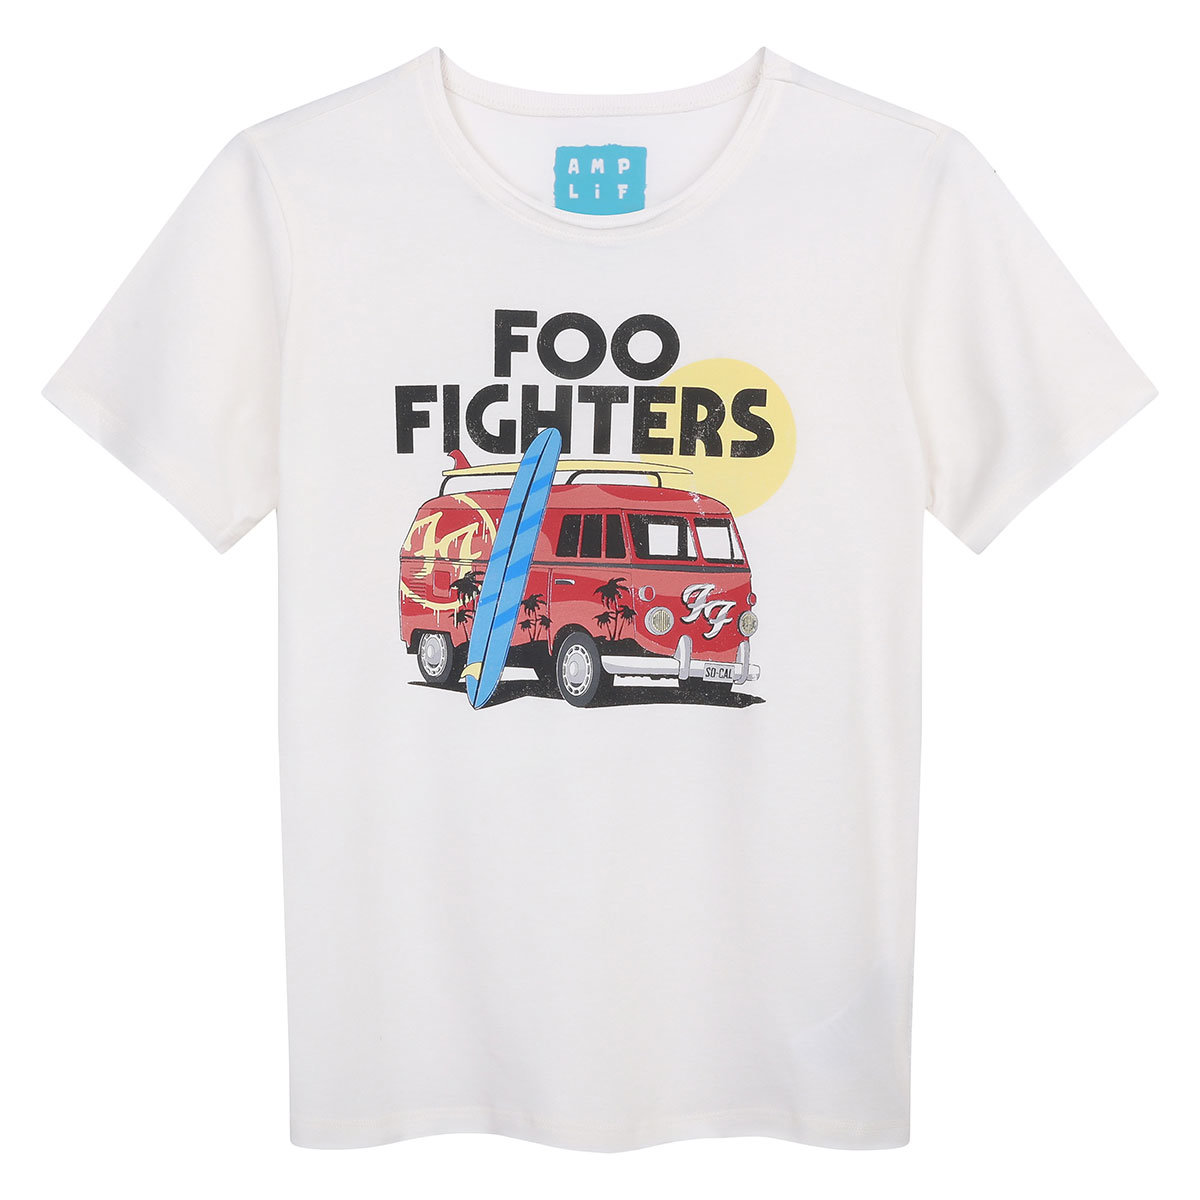 Foo Fighters Camper Van Kids Tee